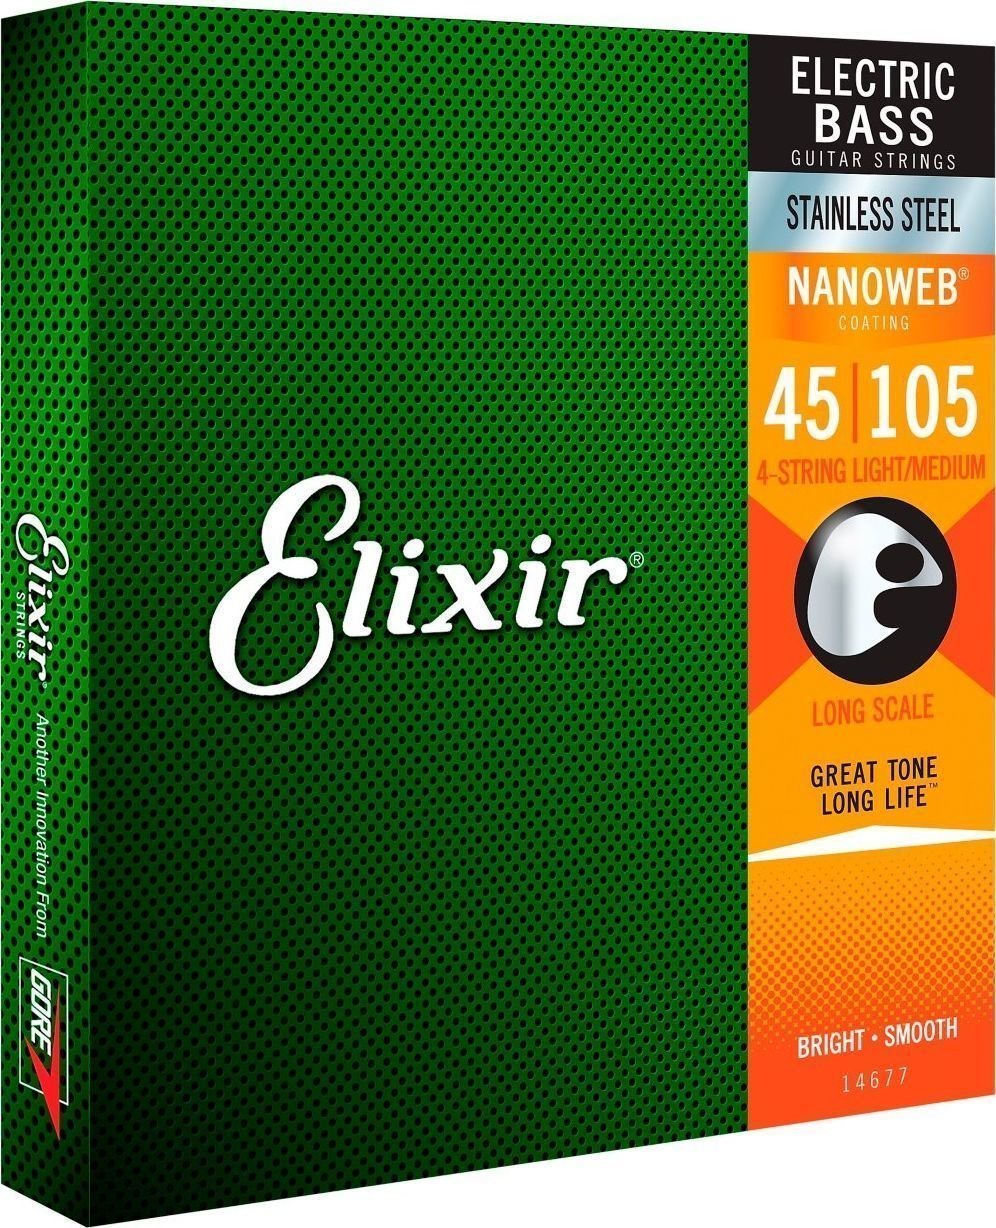 Elixir 14677 Nanoweb Elixir